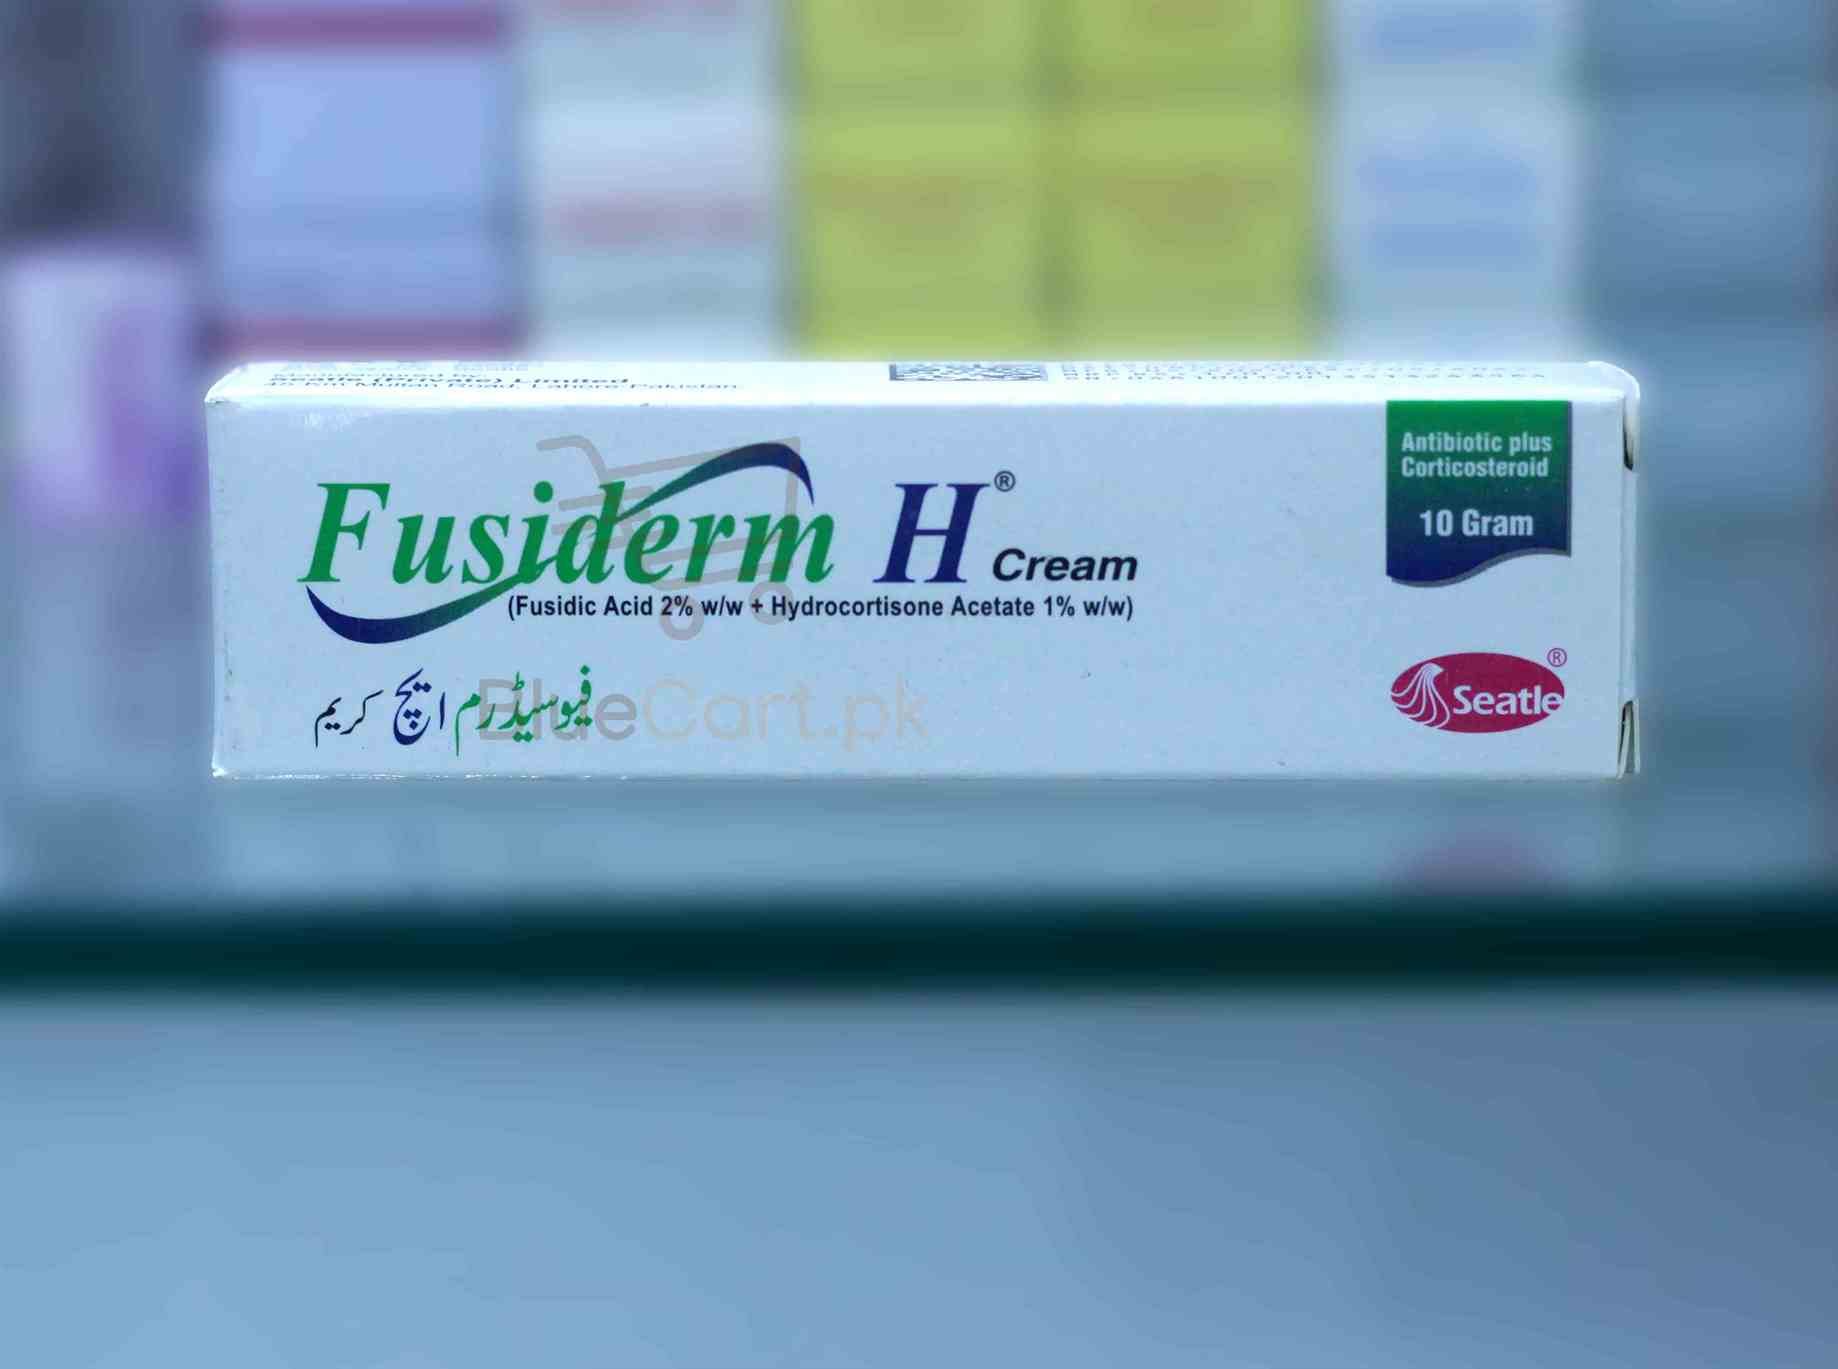 Fusiderm H Cream